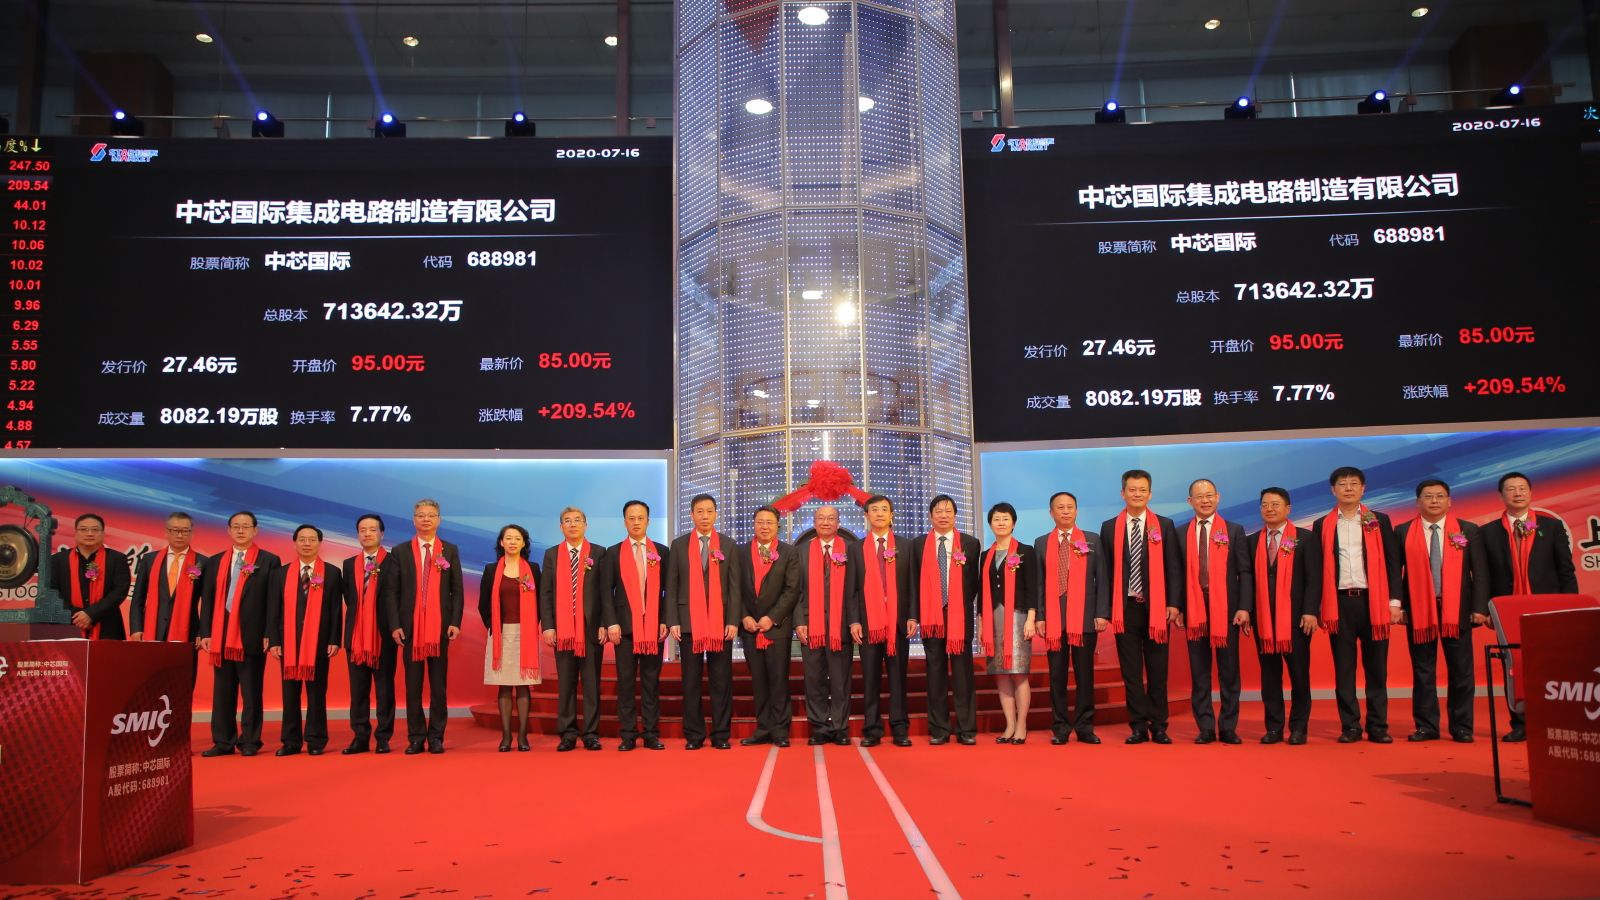 世界のIPO市場｢香港2位･上海3位｣に躍進の背景 2020年の資金調達額｡コロナ禍でも強靱さ示す | 「財新」中国Biz＆Tech | 東洋経済オンライン